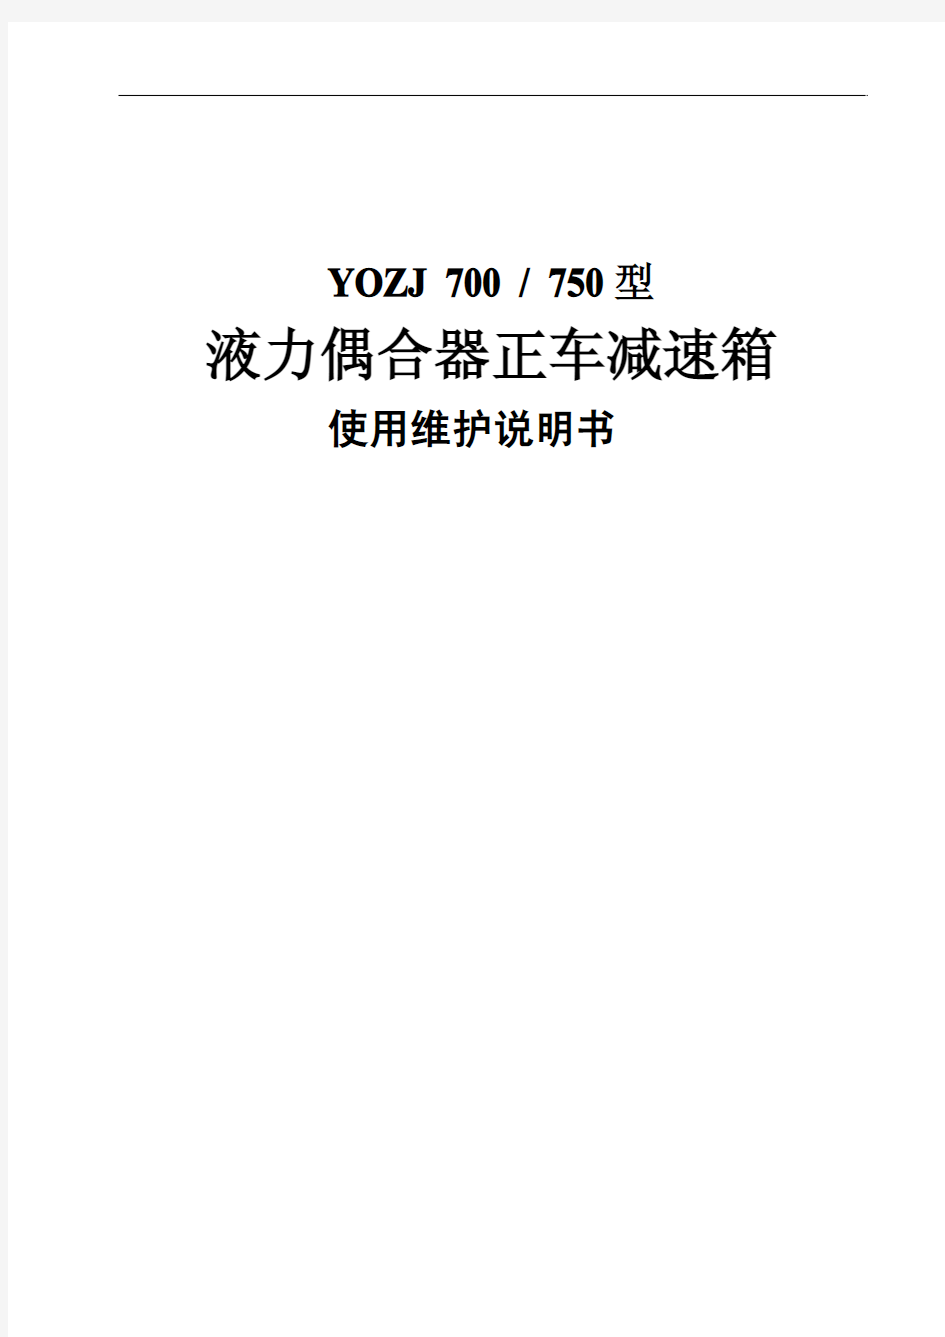 YO(Z)J750液力偶合器(正车)减速箱使用维护说明书1